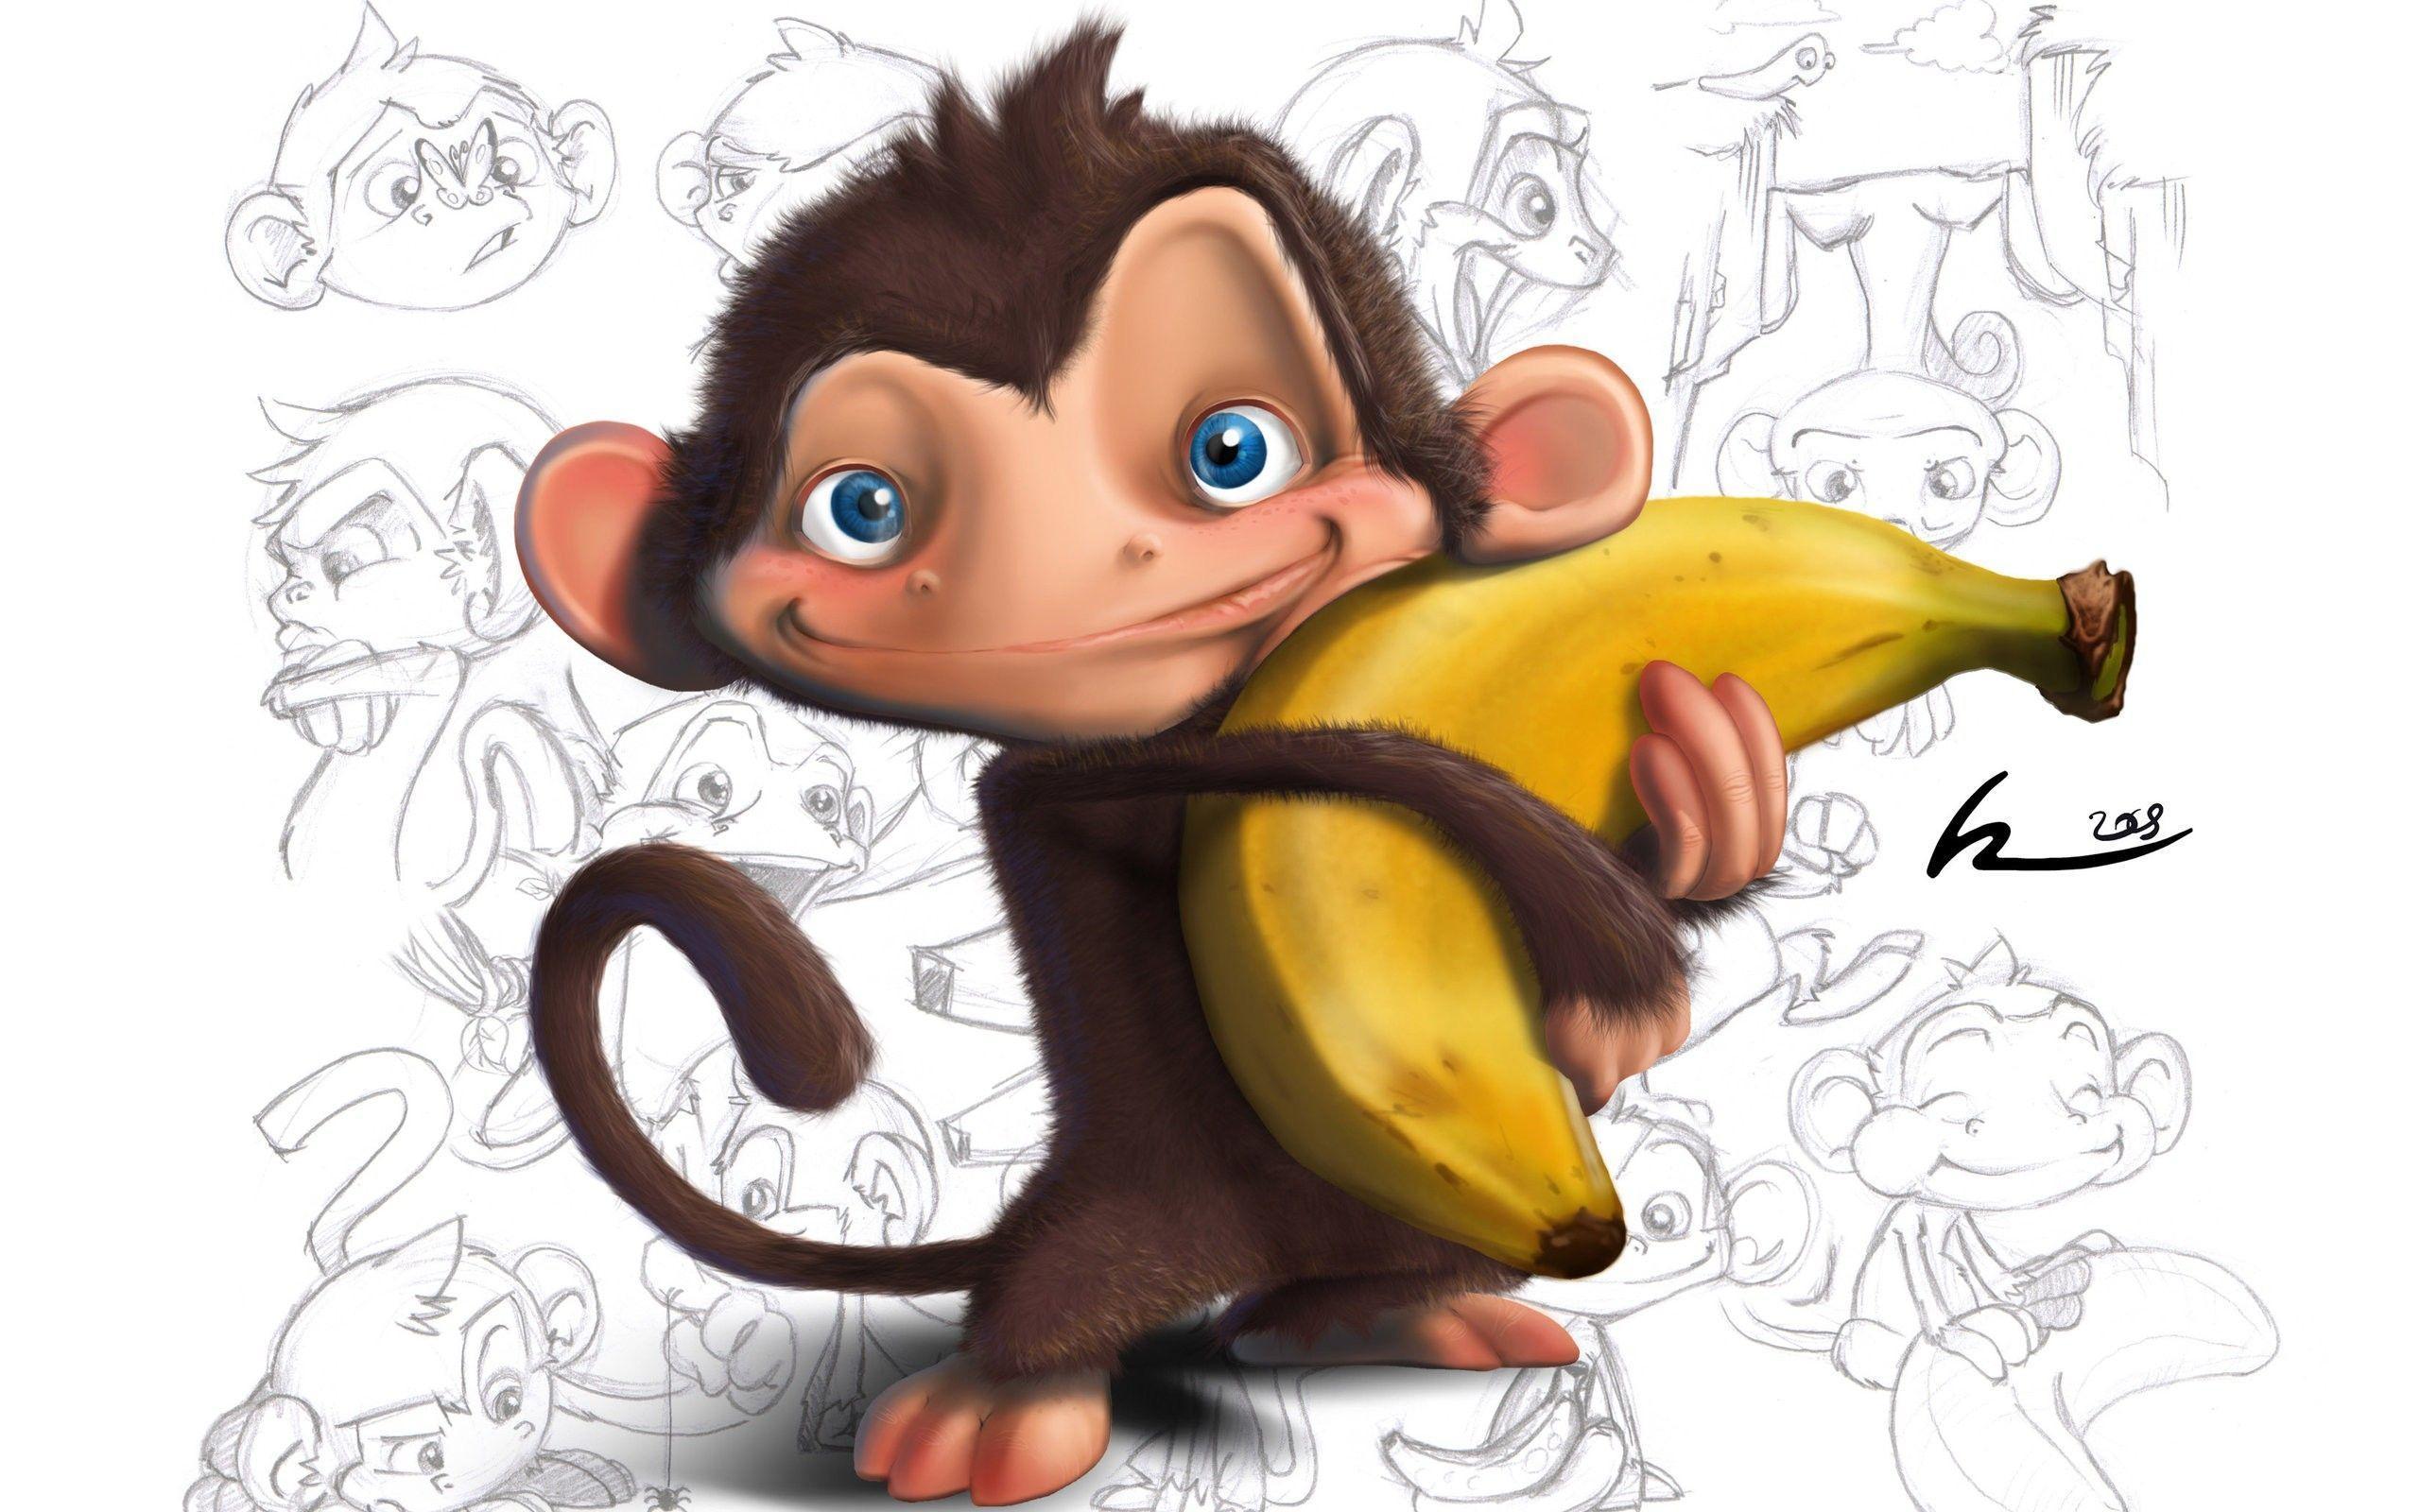 Bananas Monkeys Wallpaper 2560x1600 px Free Download